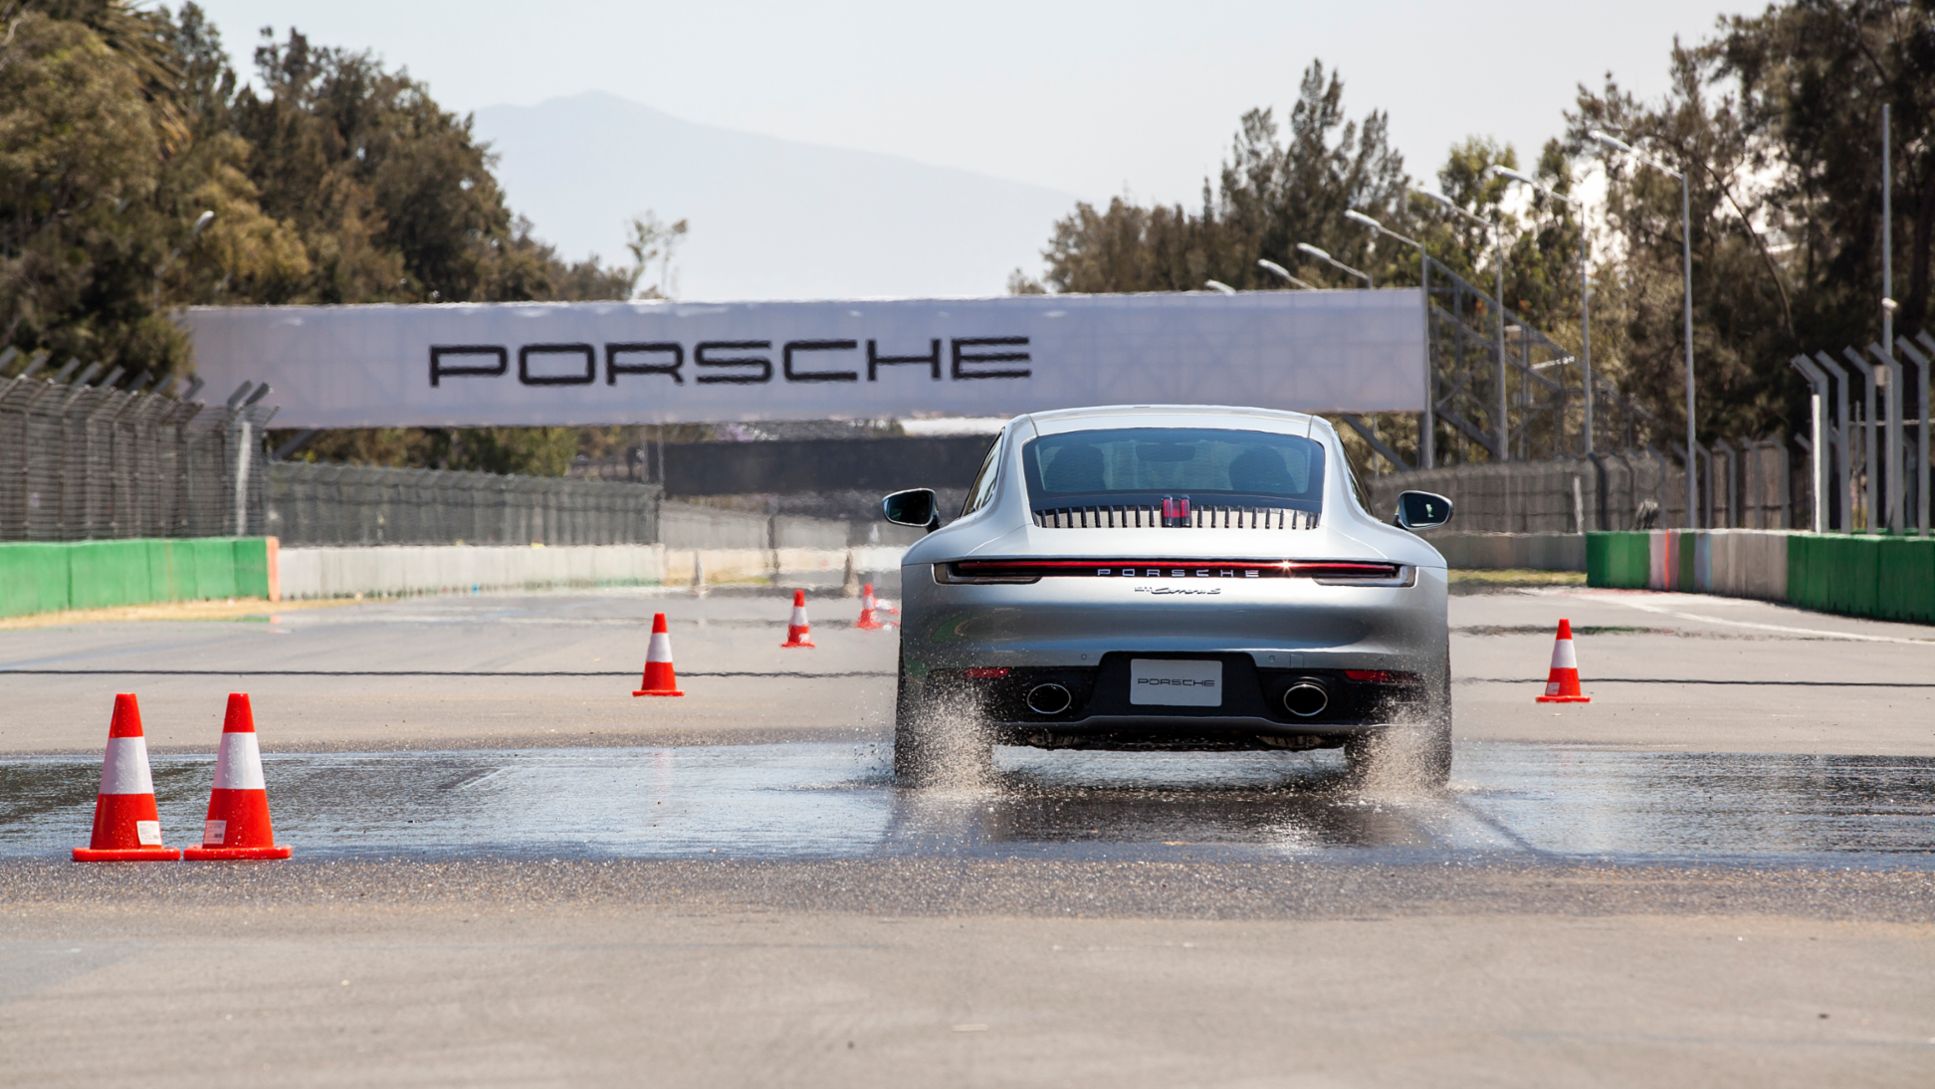 Porsche Wet para conducir de forma más segura en superficies mojadas